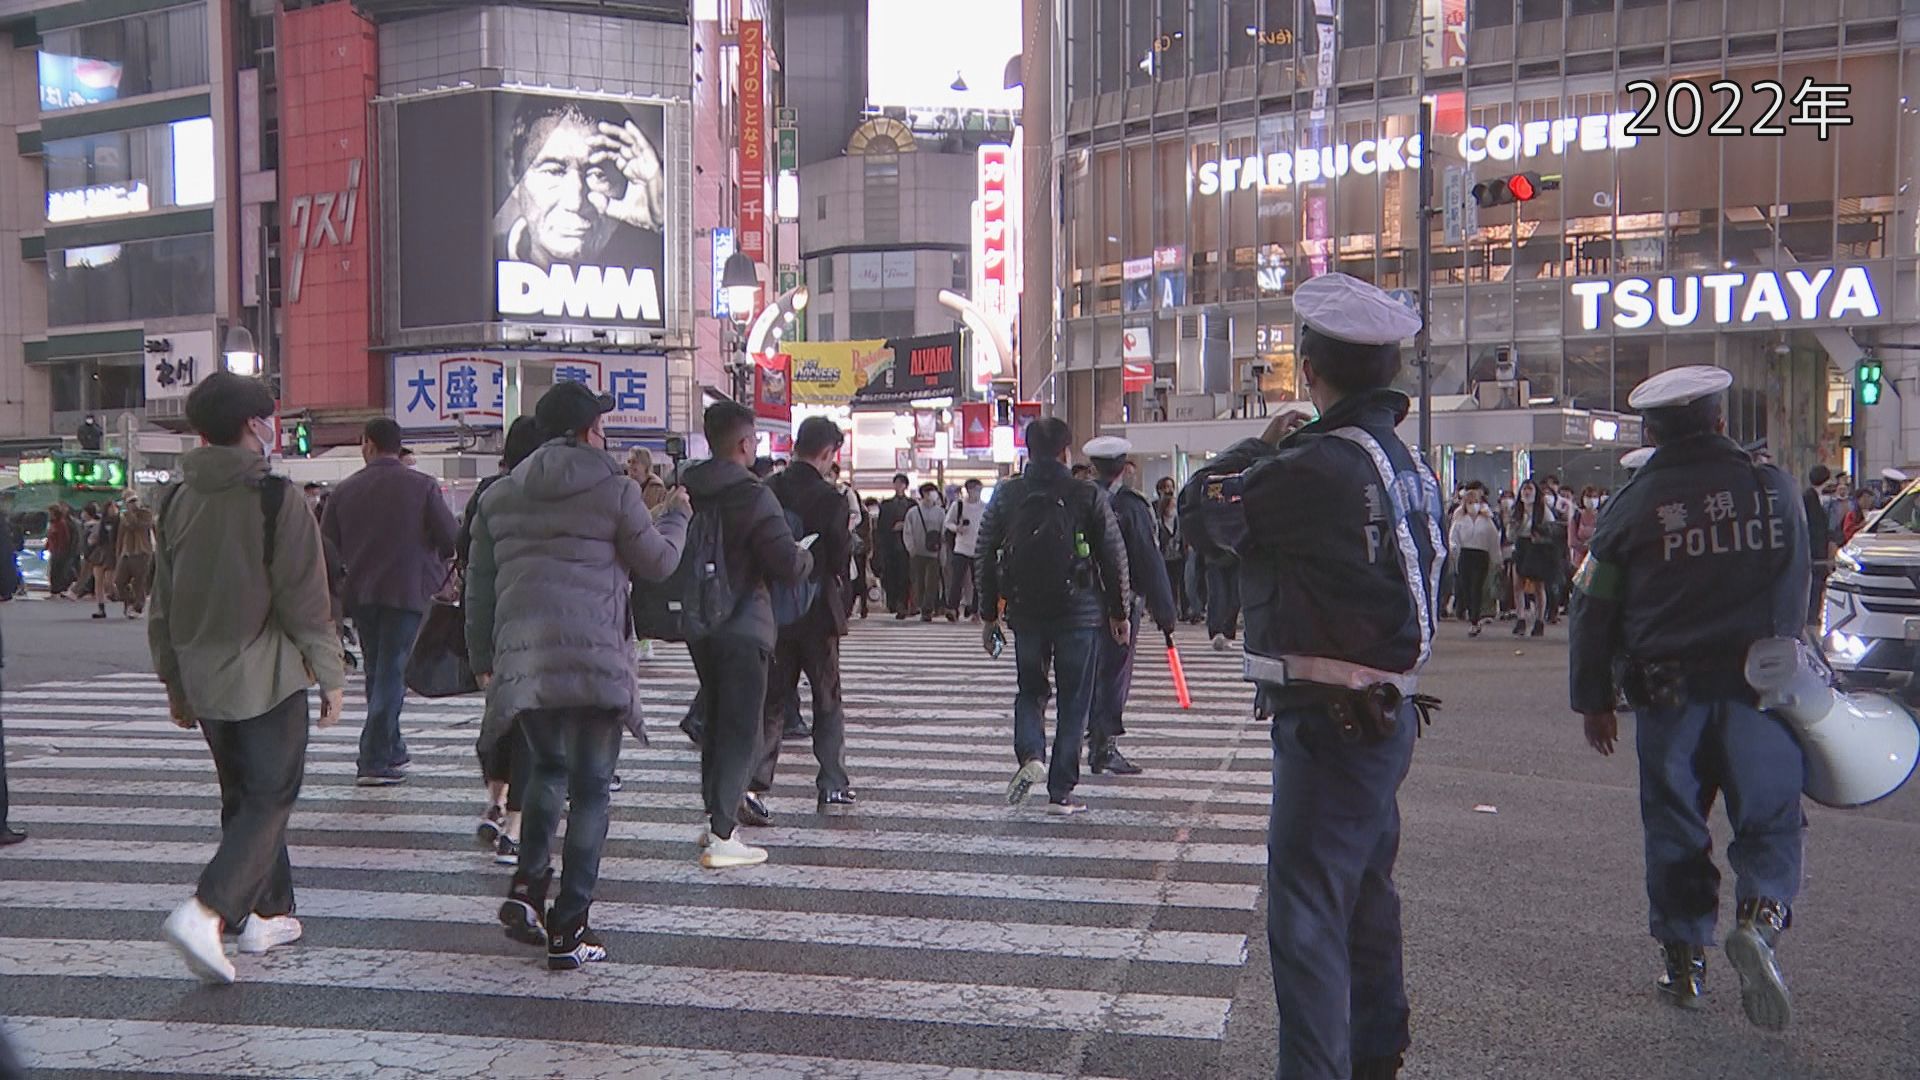 警視庁が週末からハロウィーン混雑警戒 渋谷駅周辺で“交通規制・駐車対策・検問実施”などの可能性も | TBS NEWS DIG - TBS NEWS DIG Powered by JNN